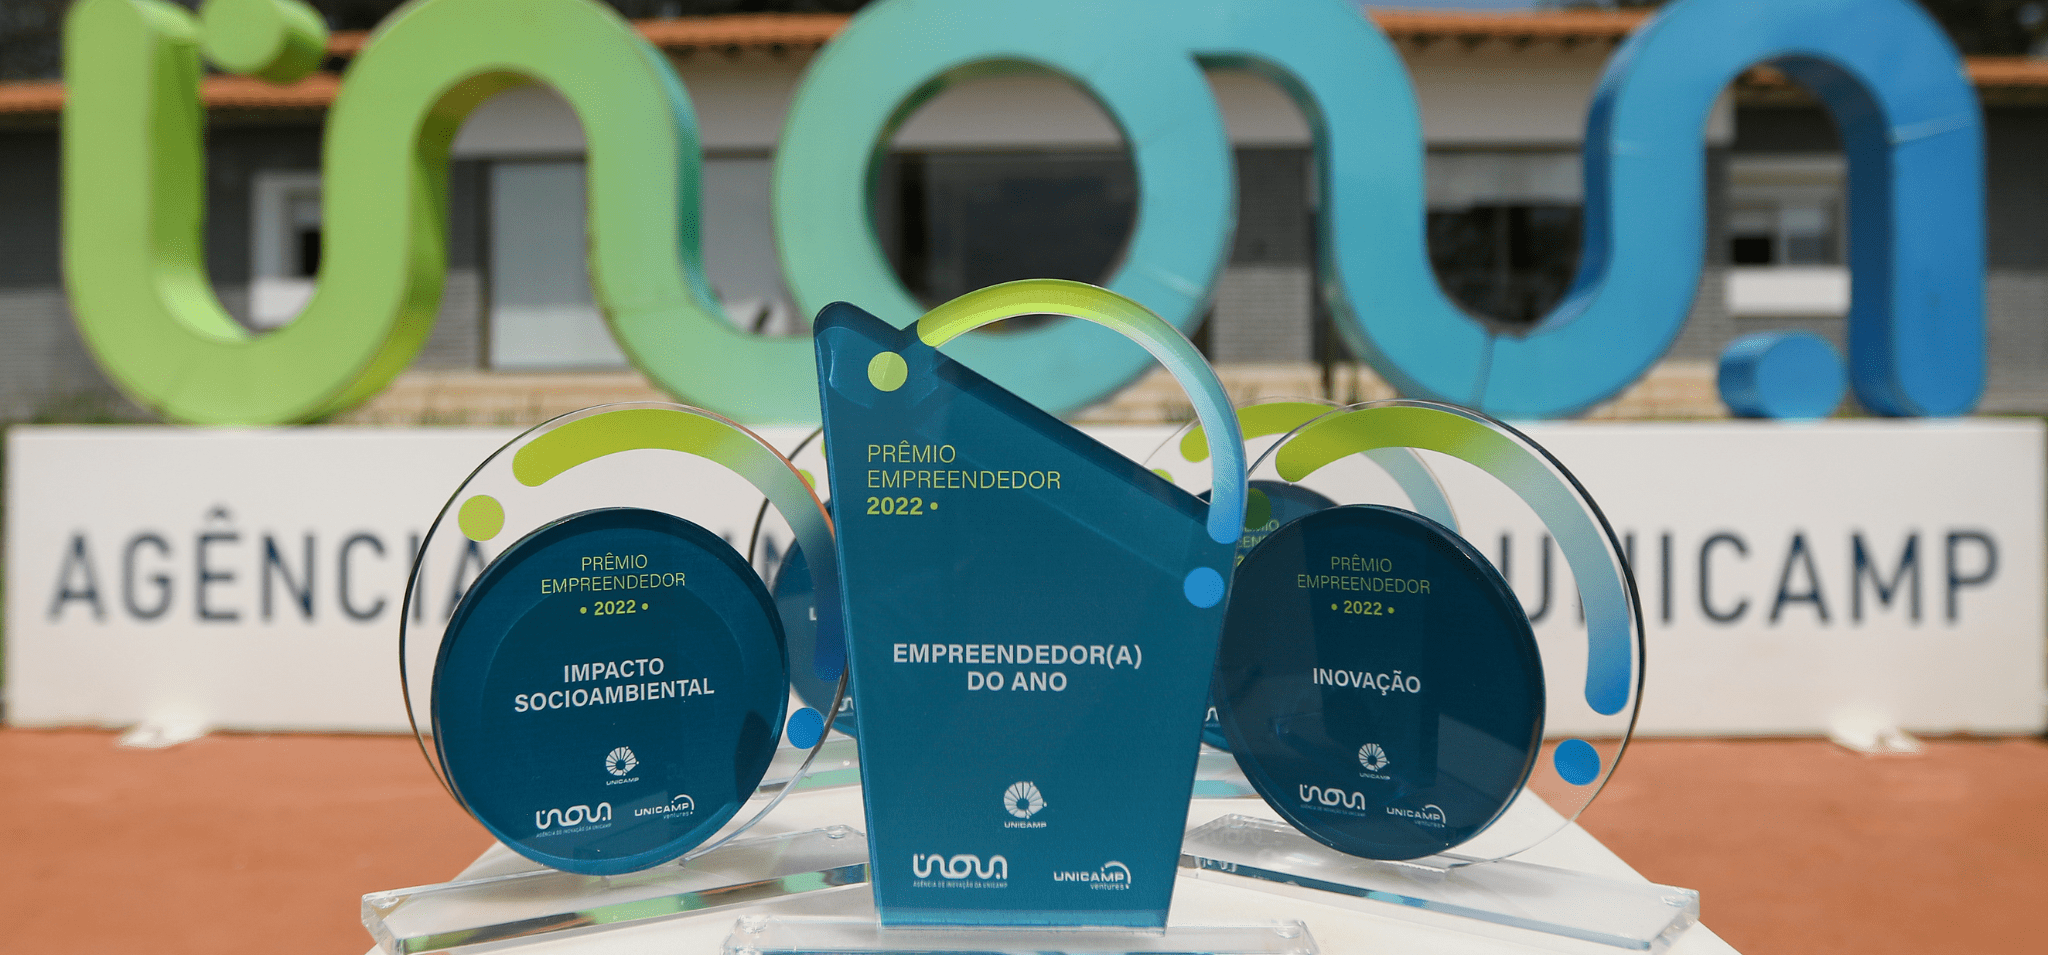 A imagem mostra os troféus do Prêmio Empreendedor 2023 da Unicamp. Fim da descrição.